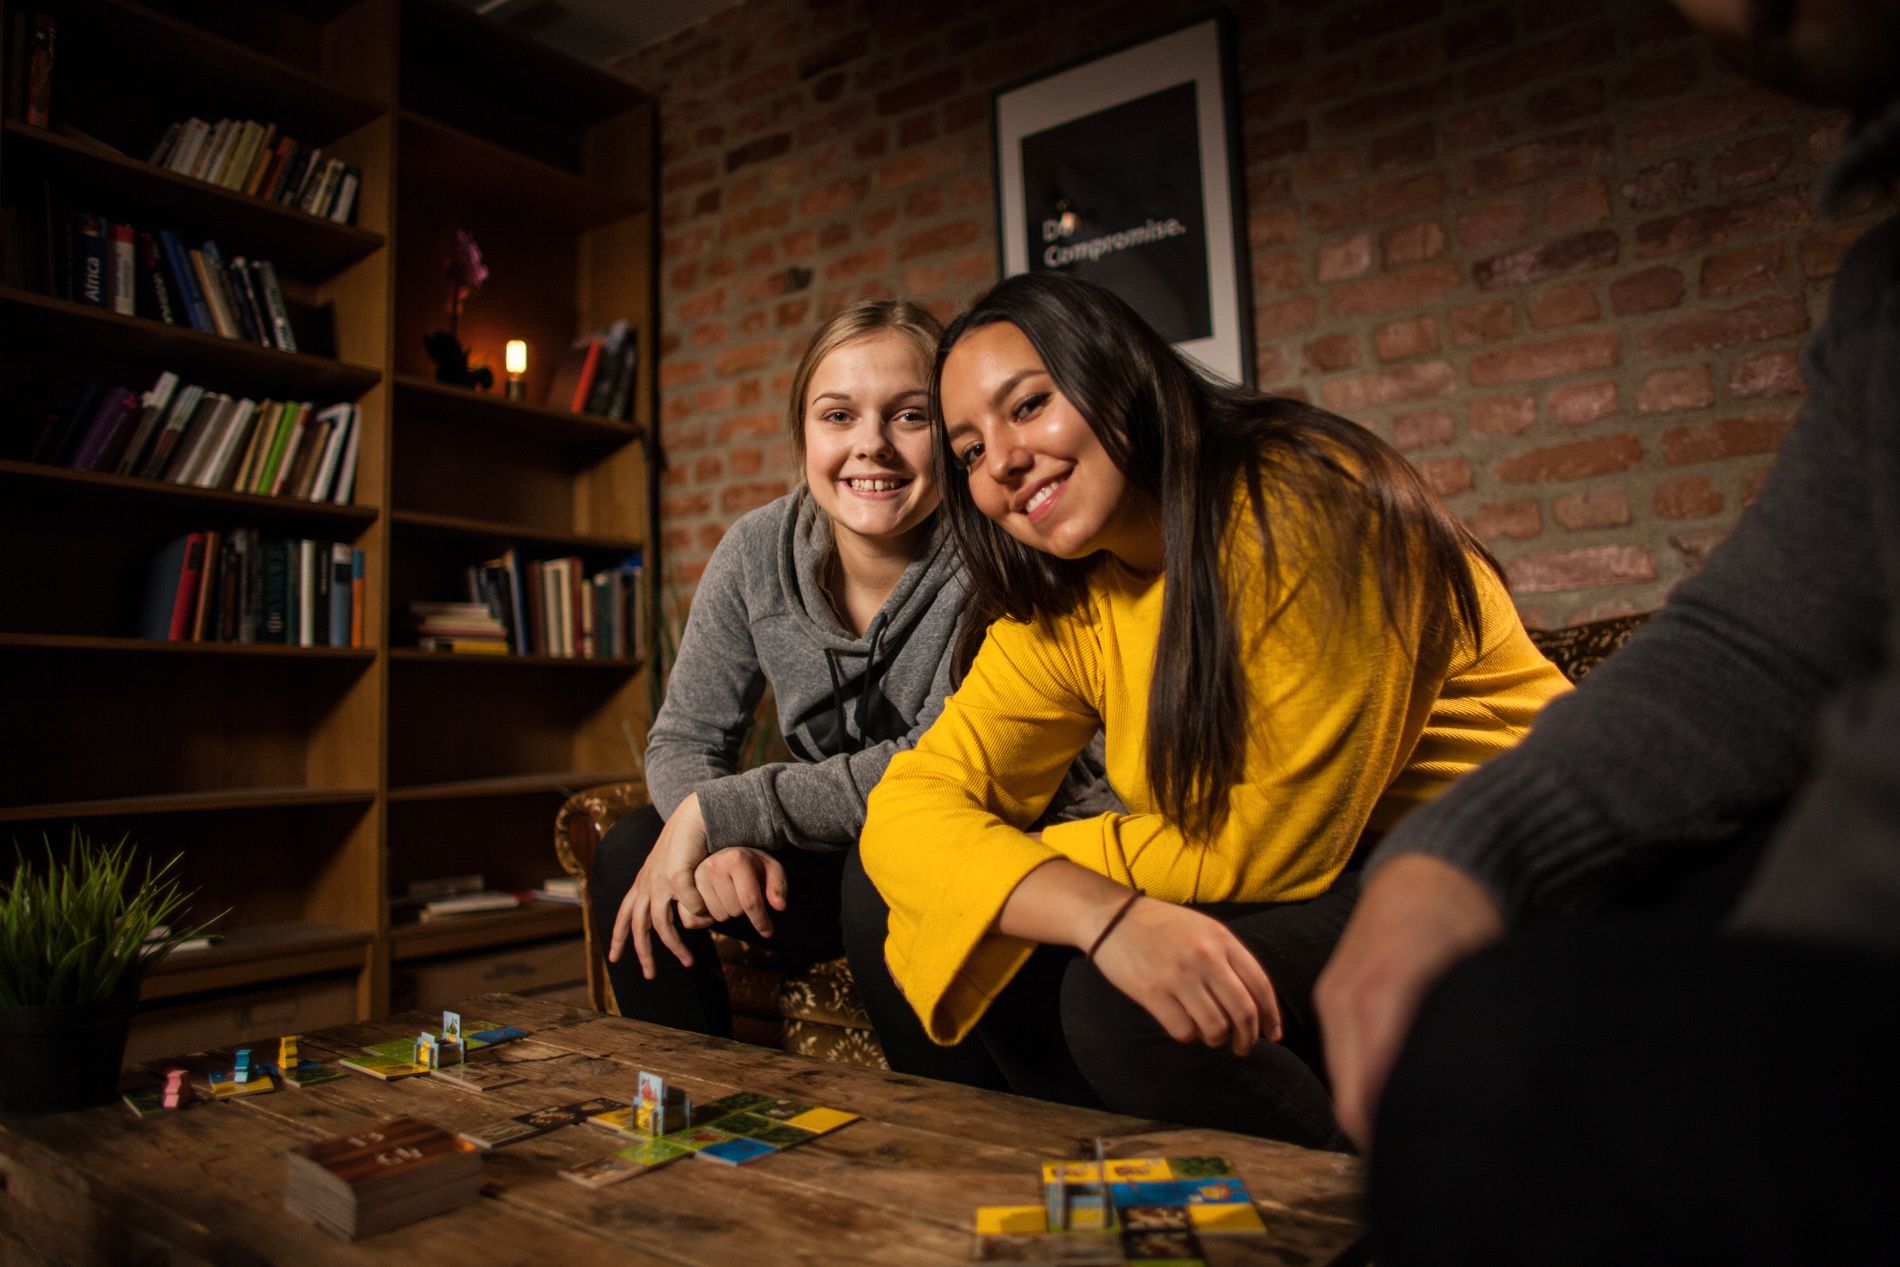 SPILLER MED PAPPA: Thea Tokerud og Natalie Tangen er begge glade i å spille spill. —De fleste kortspillene jeg kan har jeg lært av pappa, sier Thea.